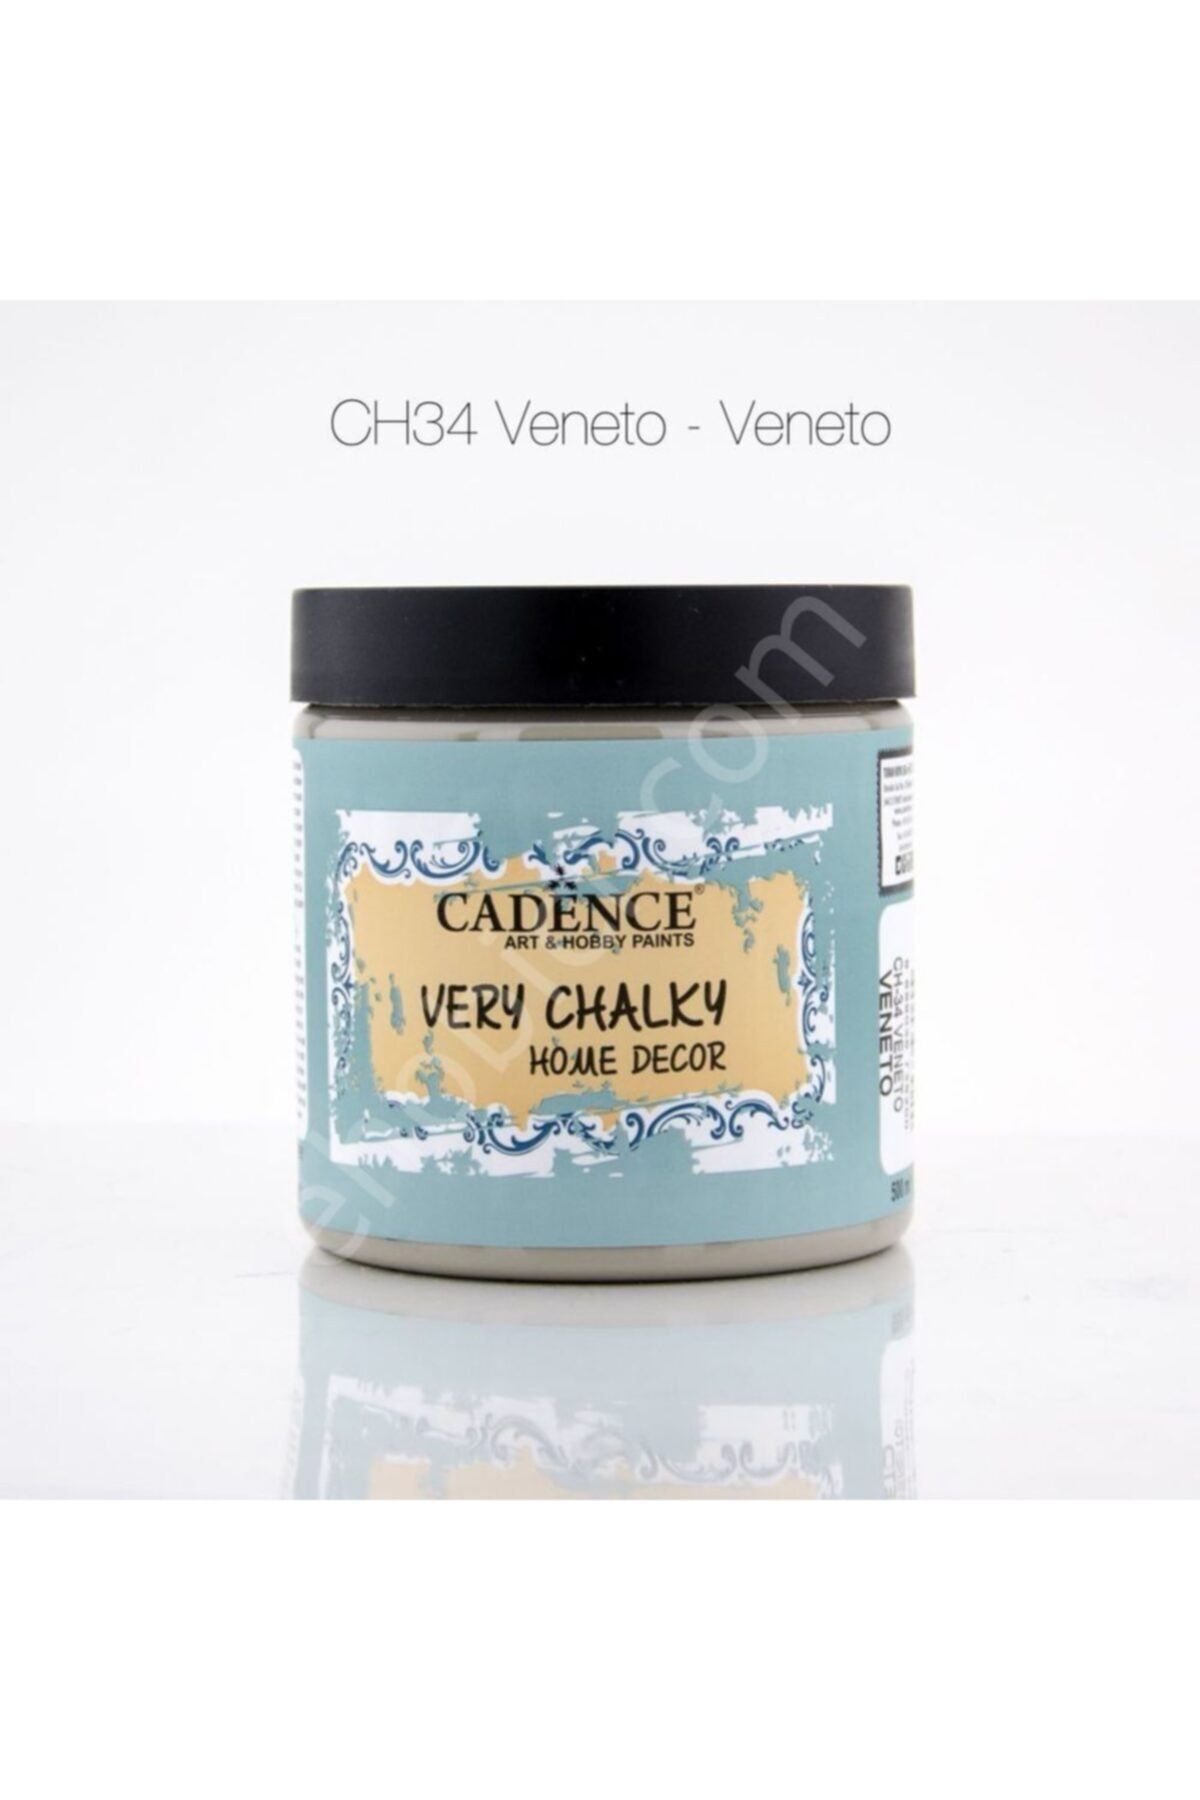 Cadence Ch34 Veneto - Very Chalky Home Decor 500ml | Marmara Hobi